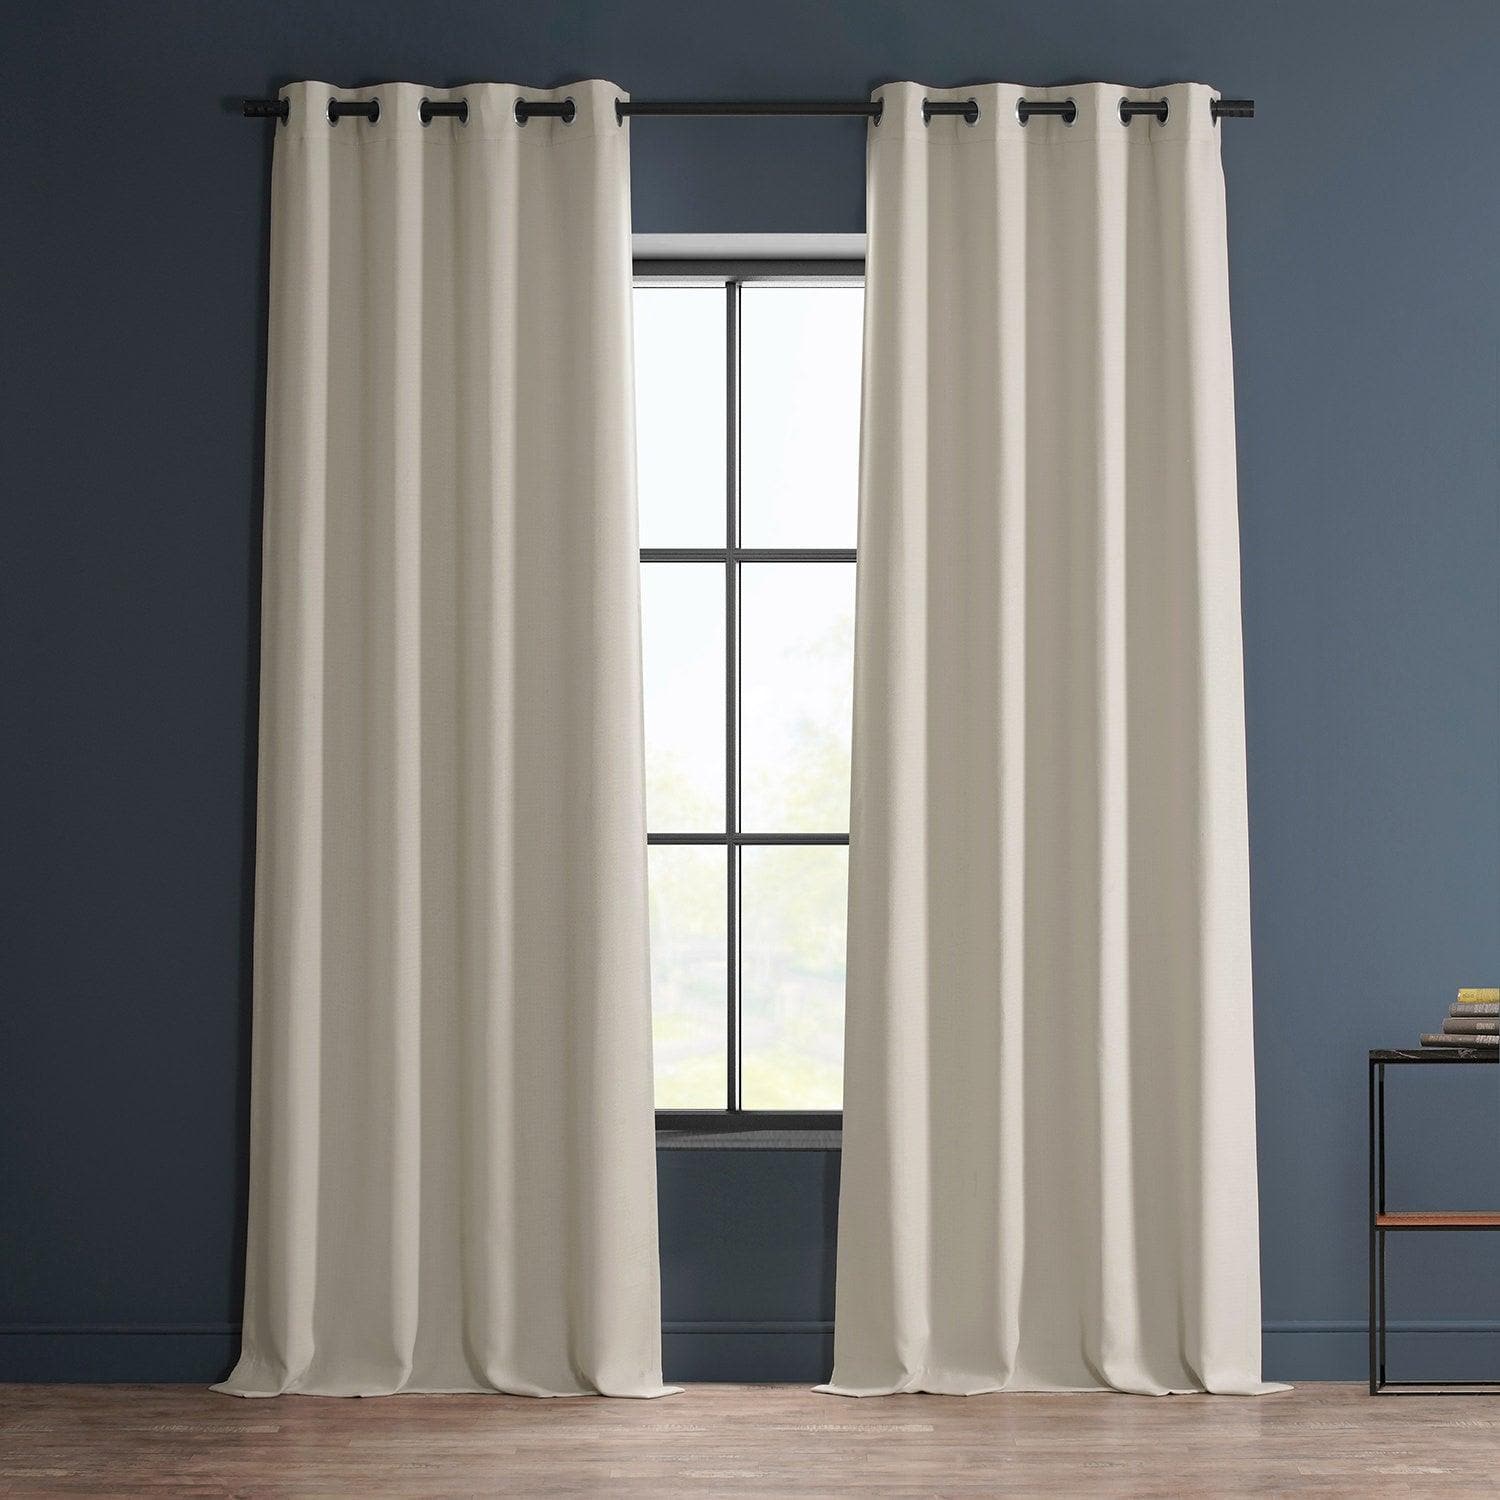 Birch Grommet Textured Faux Linen Room Darkening Curtain